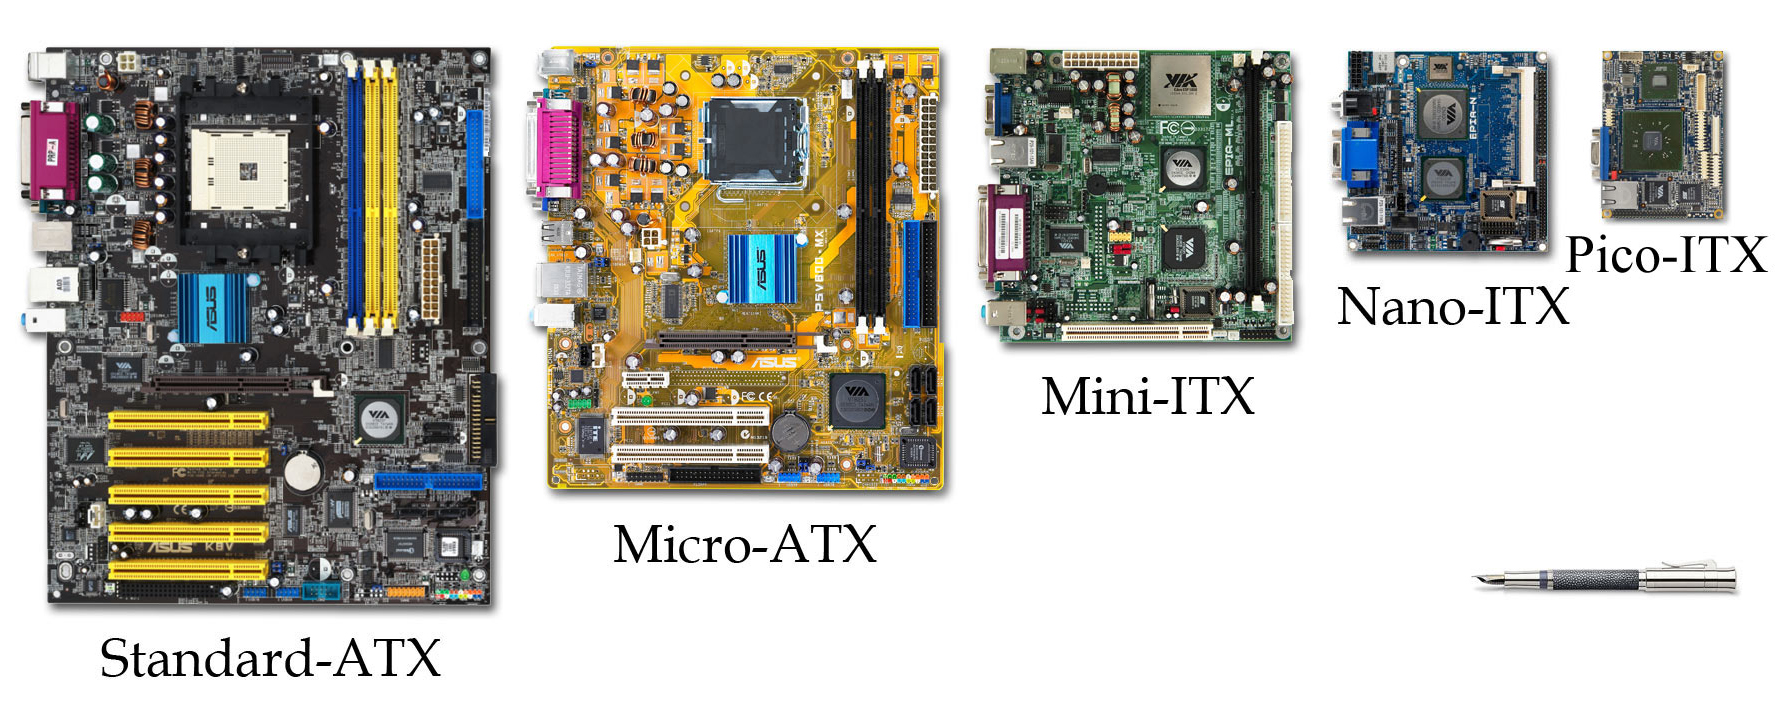 Comparació de tamanys ATX i ITX